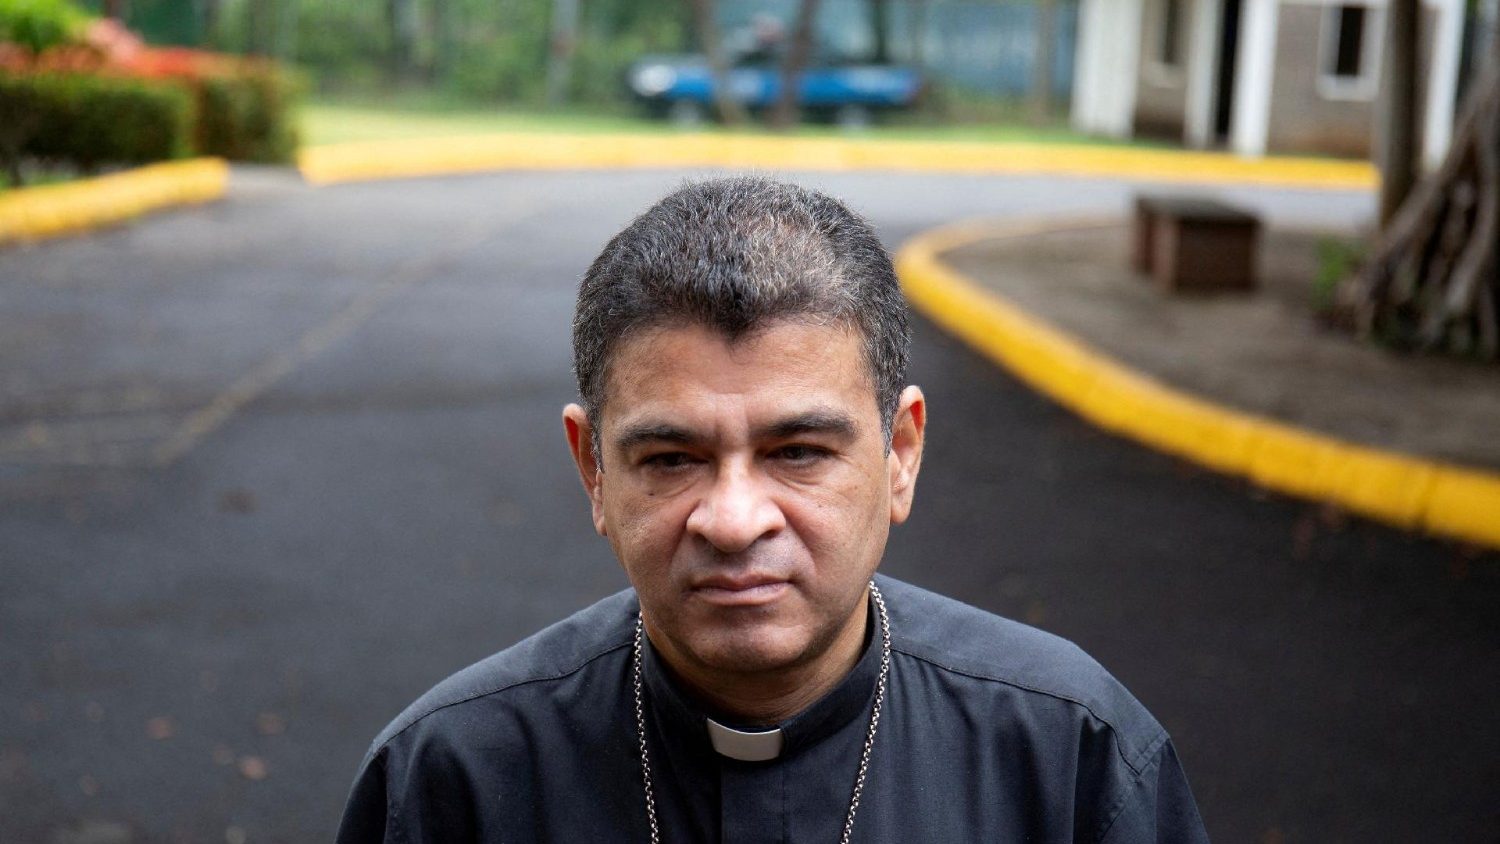 Pastor Alvarez memilih kebebasan